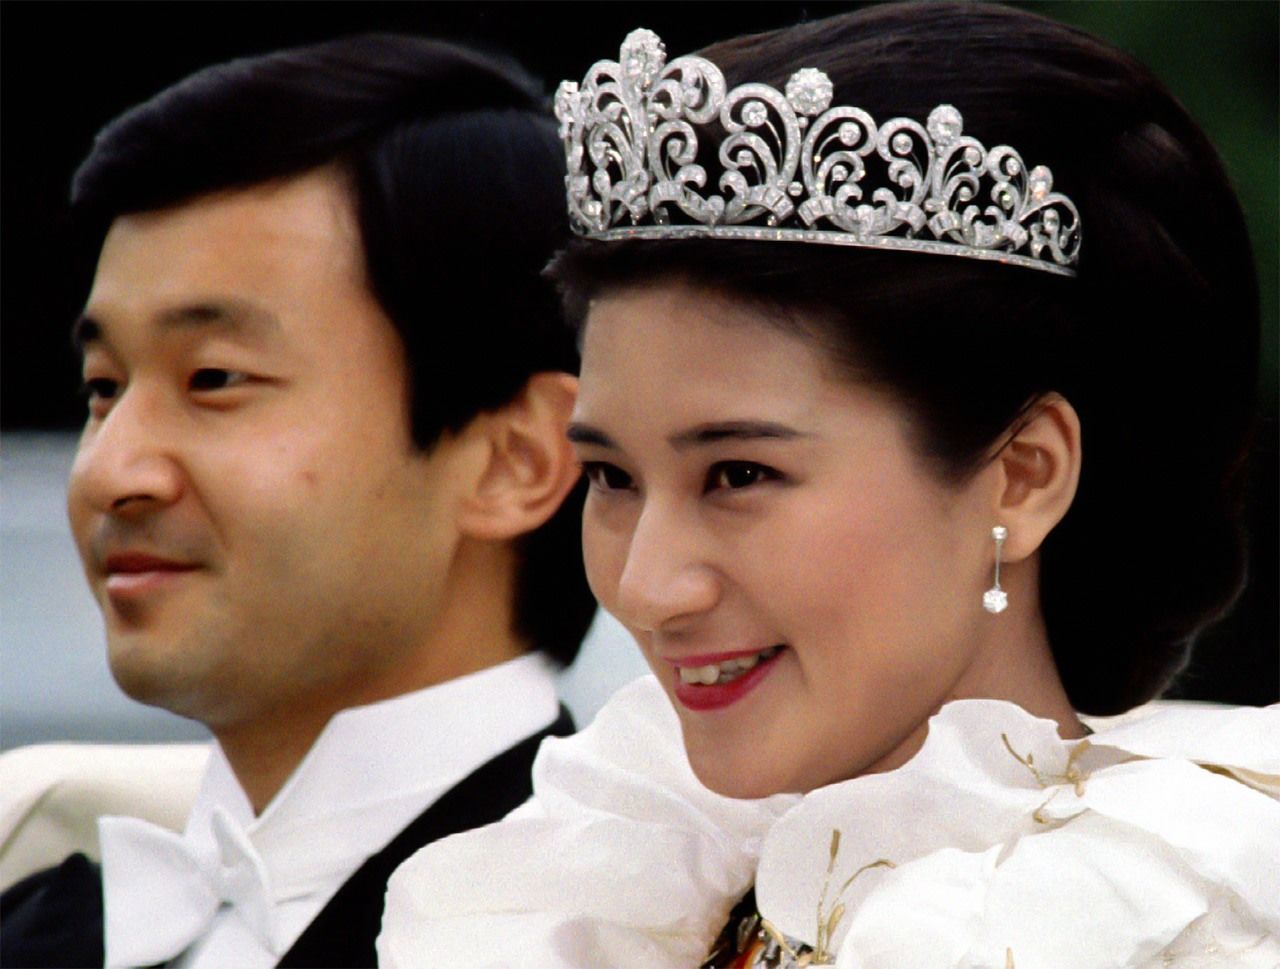 Naruhito et Masako, alors prince héritier et princesse héritière, en juin 1993, lors de leur défilé de mariage. (© Reuters)